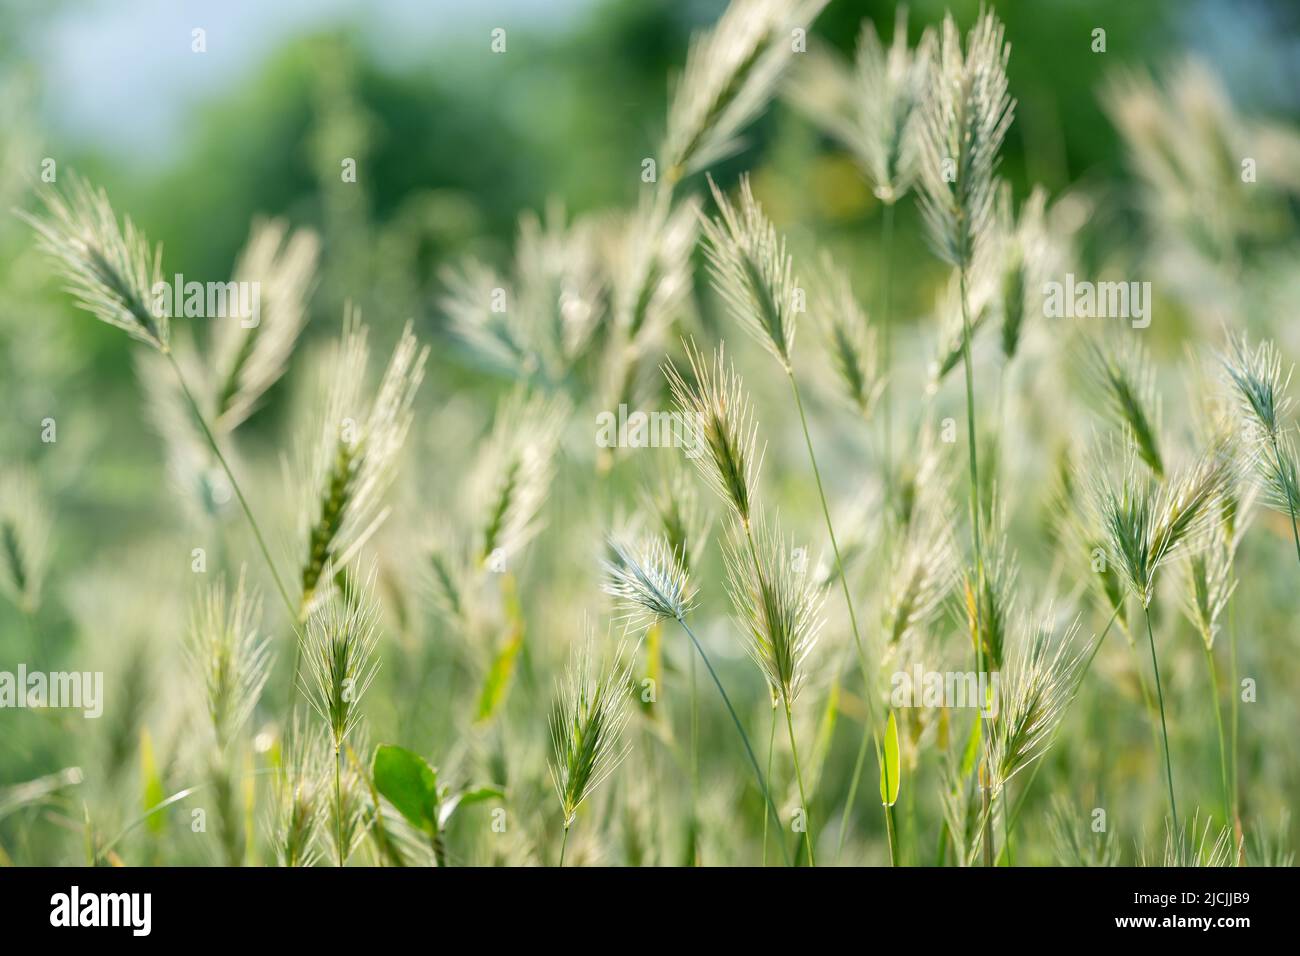 Gros plan des épis de céréales sauvages au vent. Herbe verte décorative illuminée. Banque D'Images